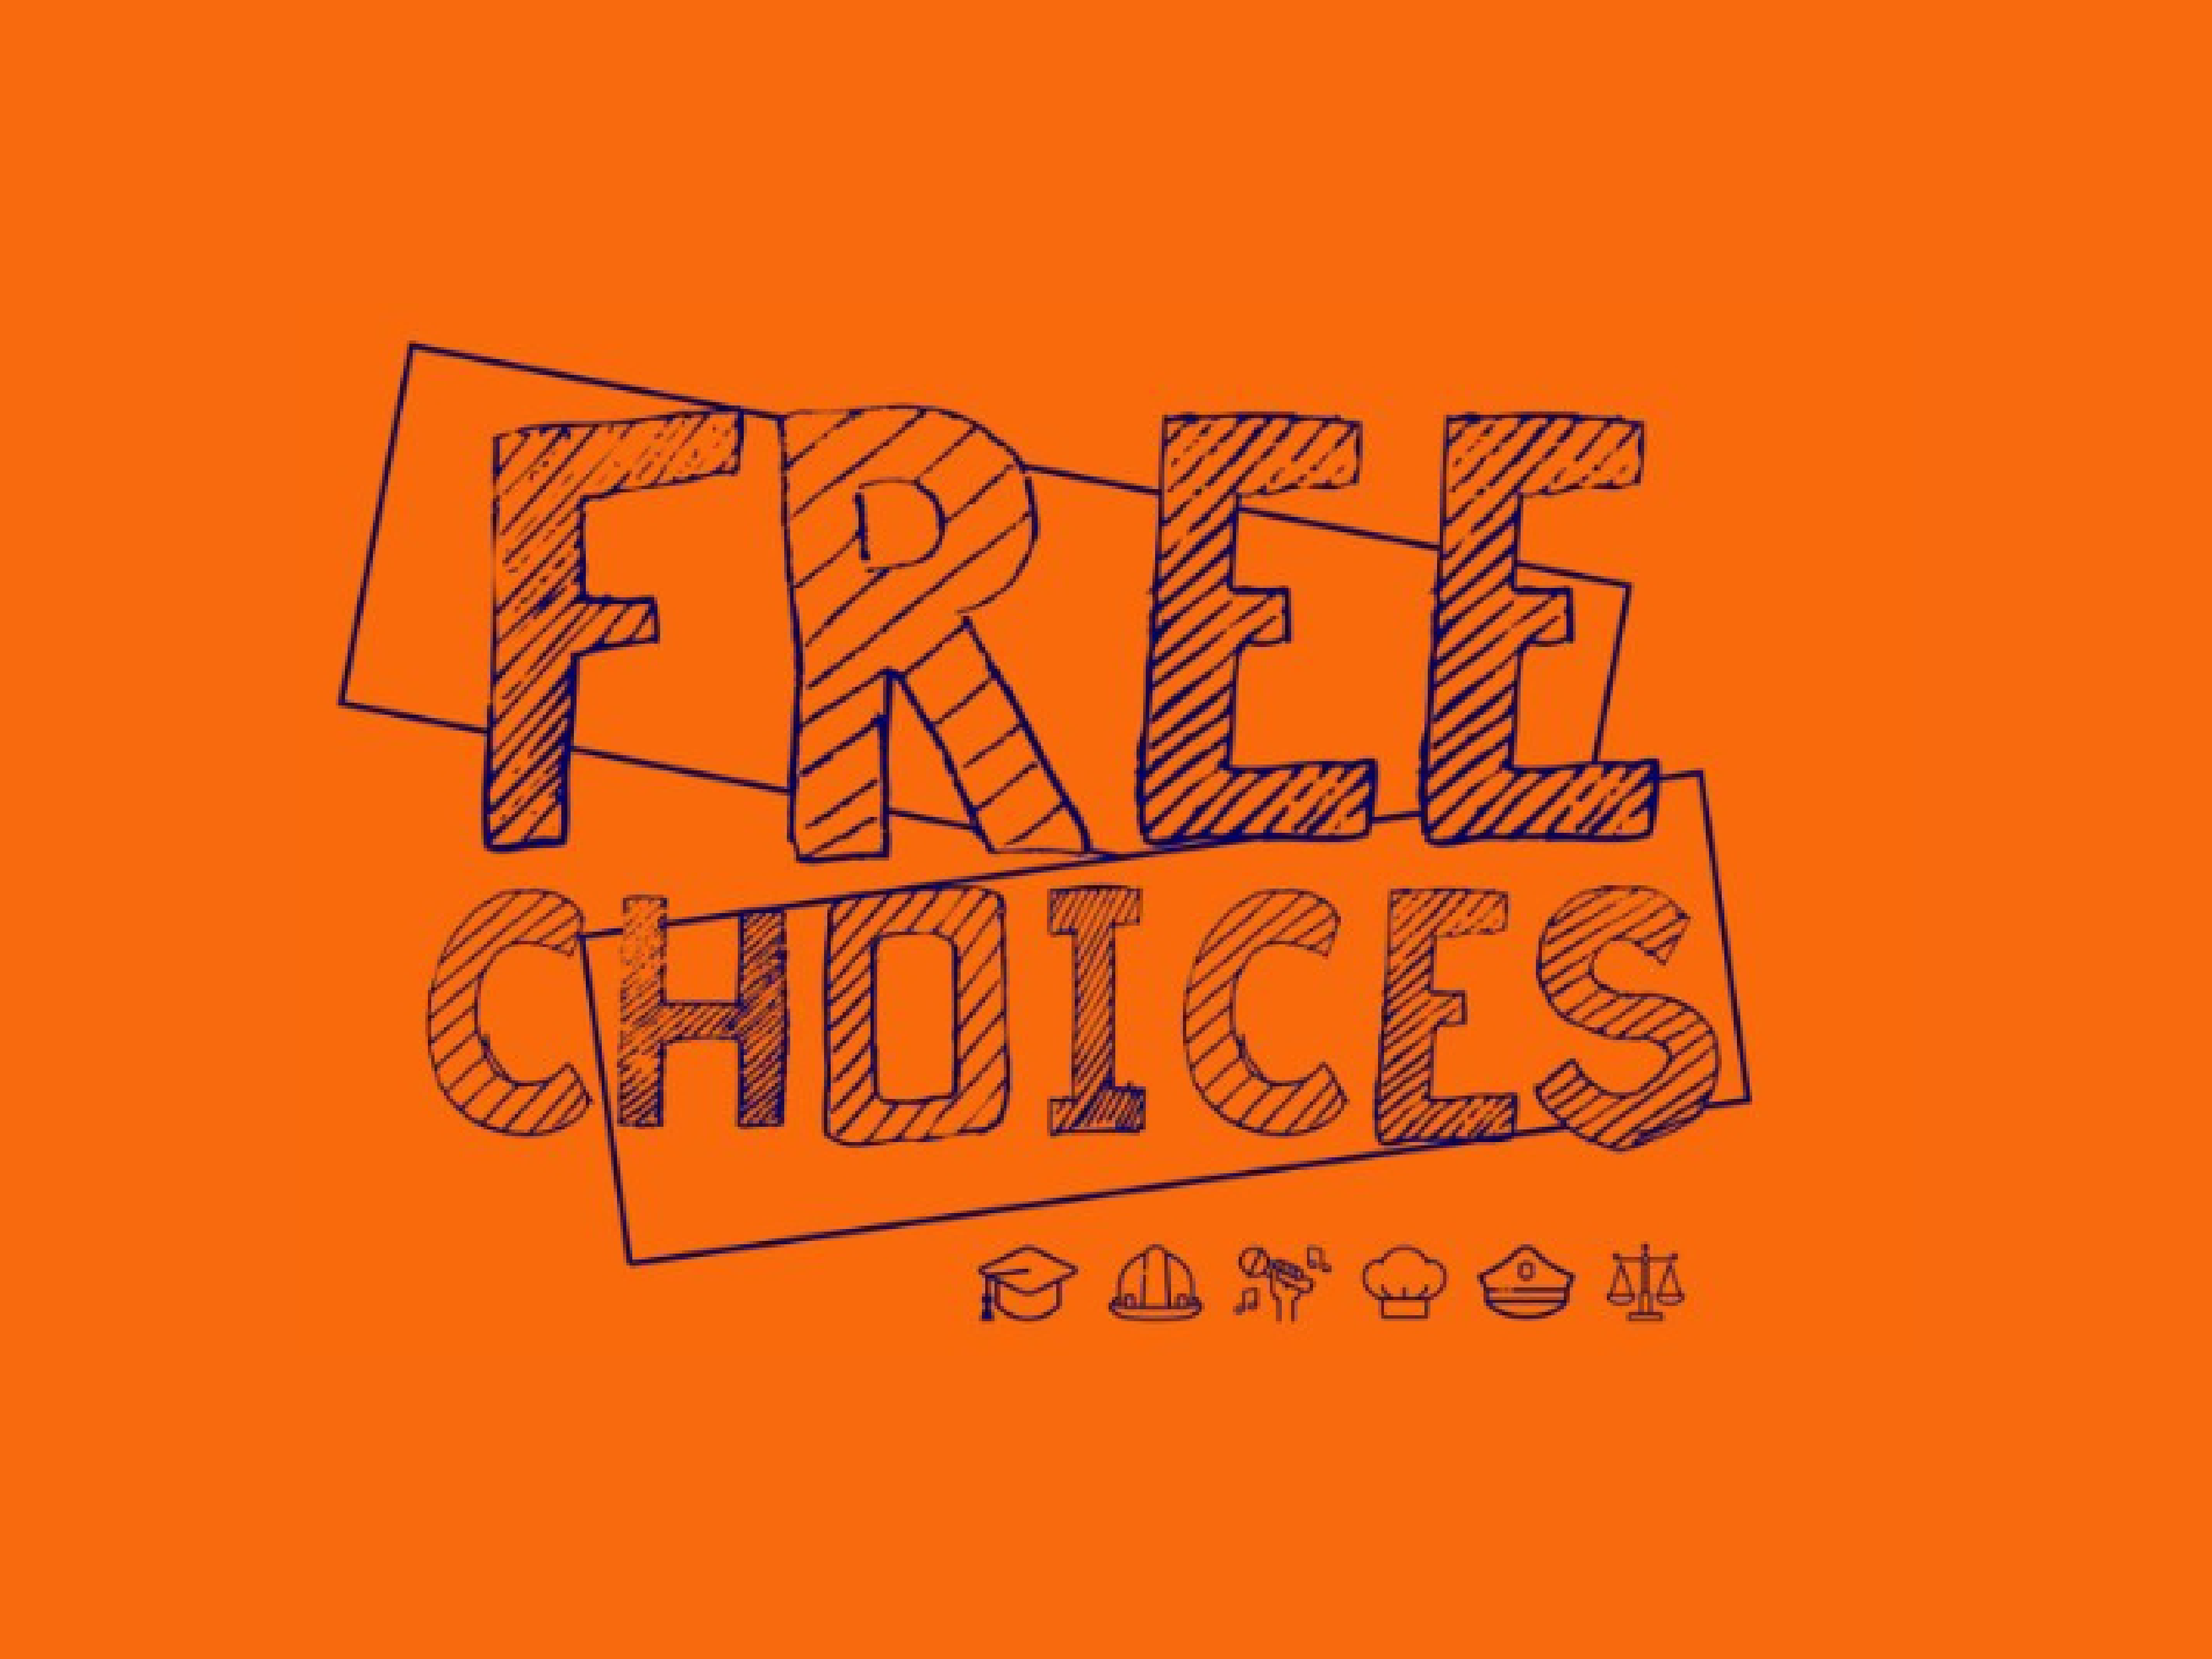 ISCE Douro acolhe o Projeto "Free Choices - Estereótipos não fazem o meu género"